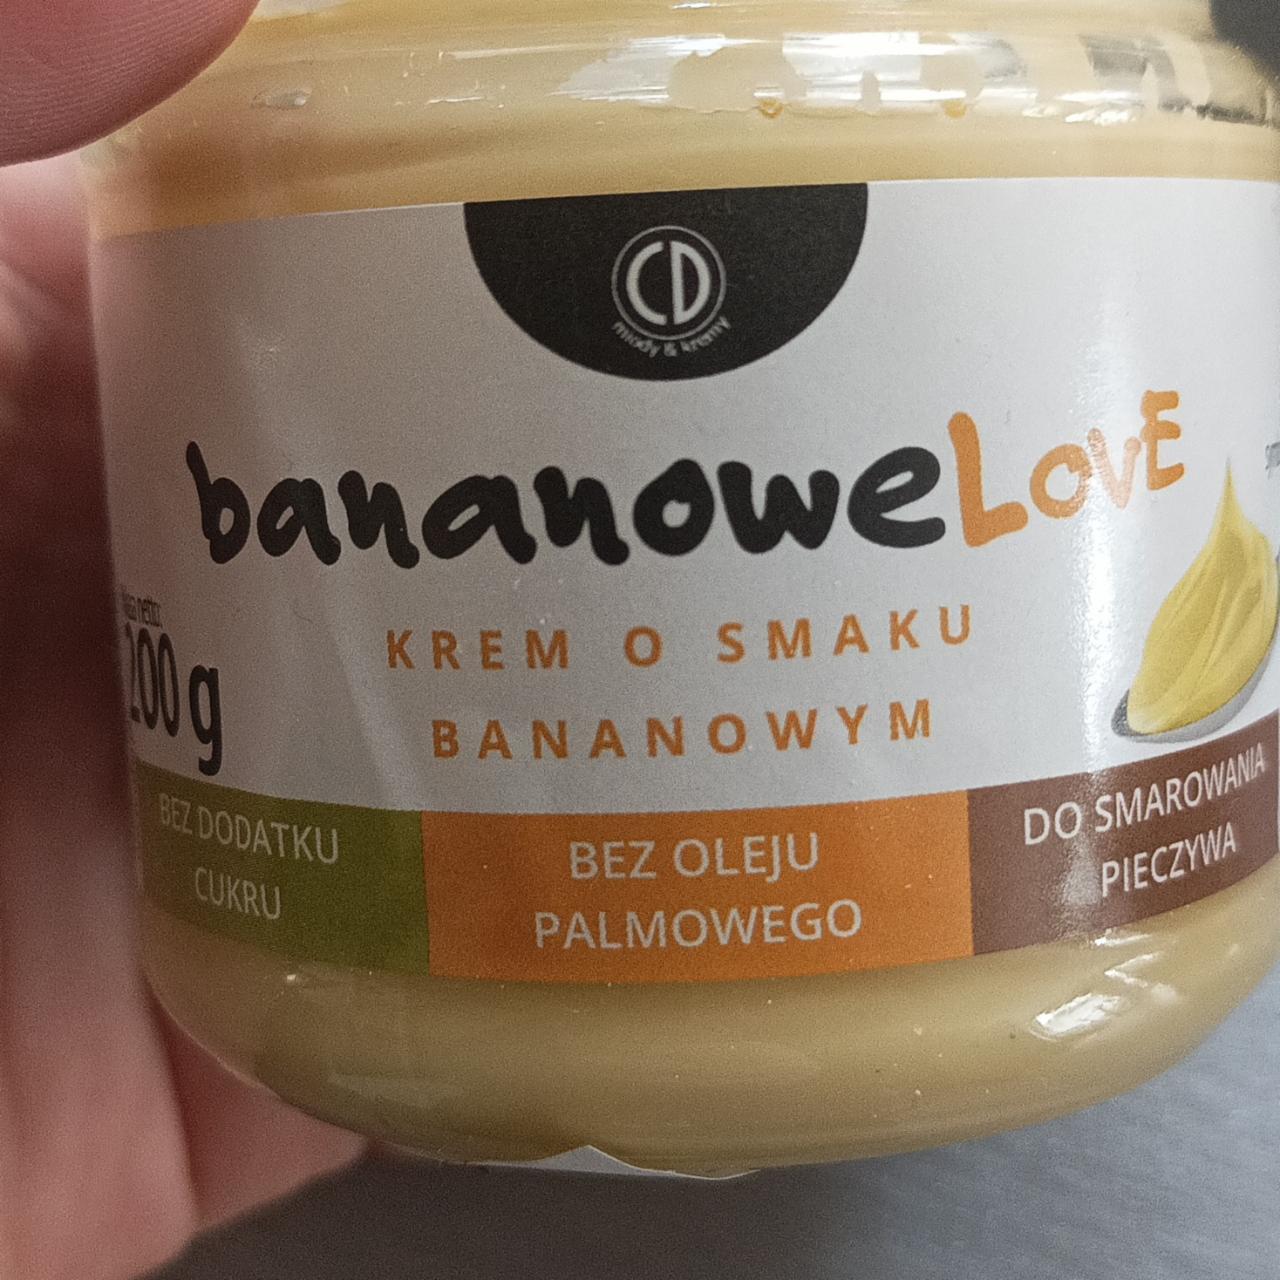 Zdjęcia - BananoweLove krem o smaku bananowym bez dodatku cukru CD